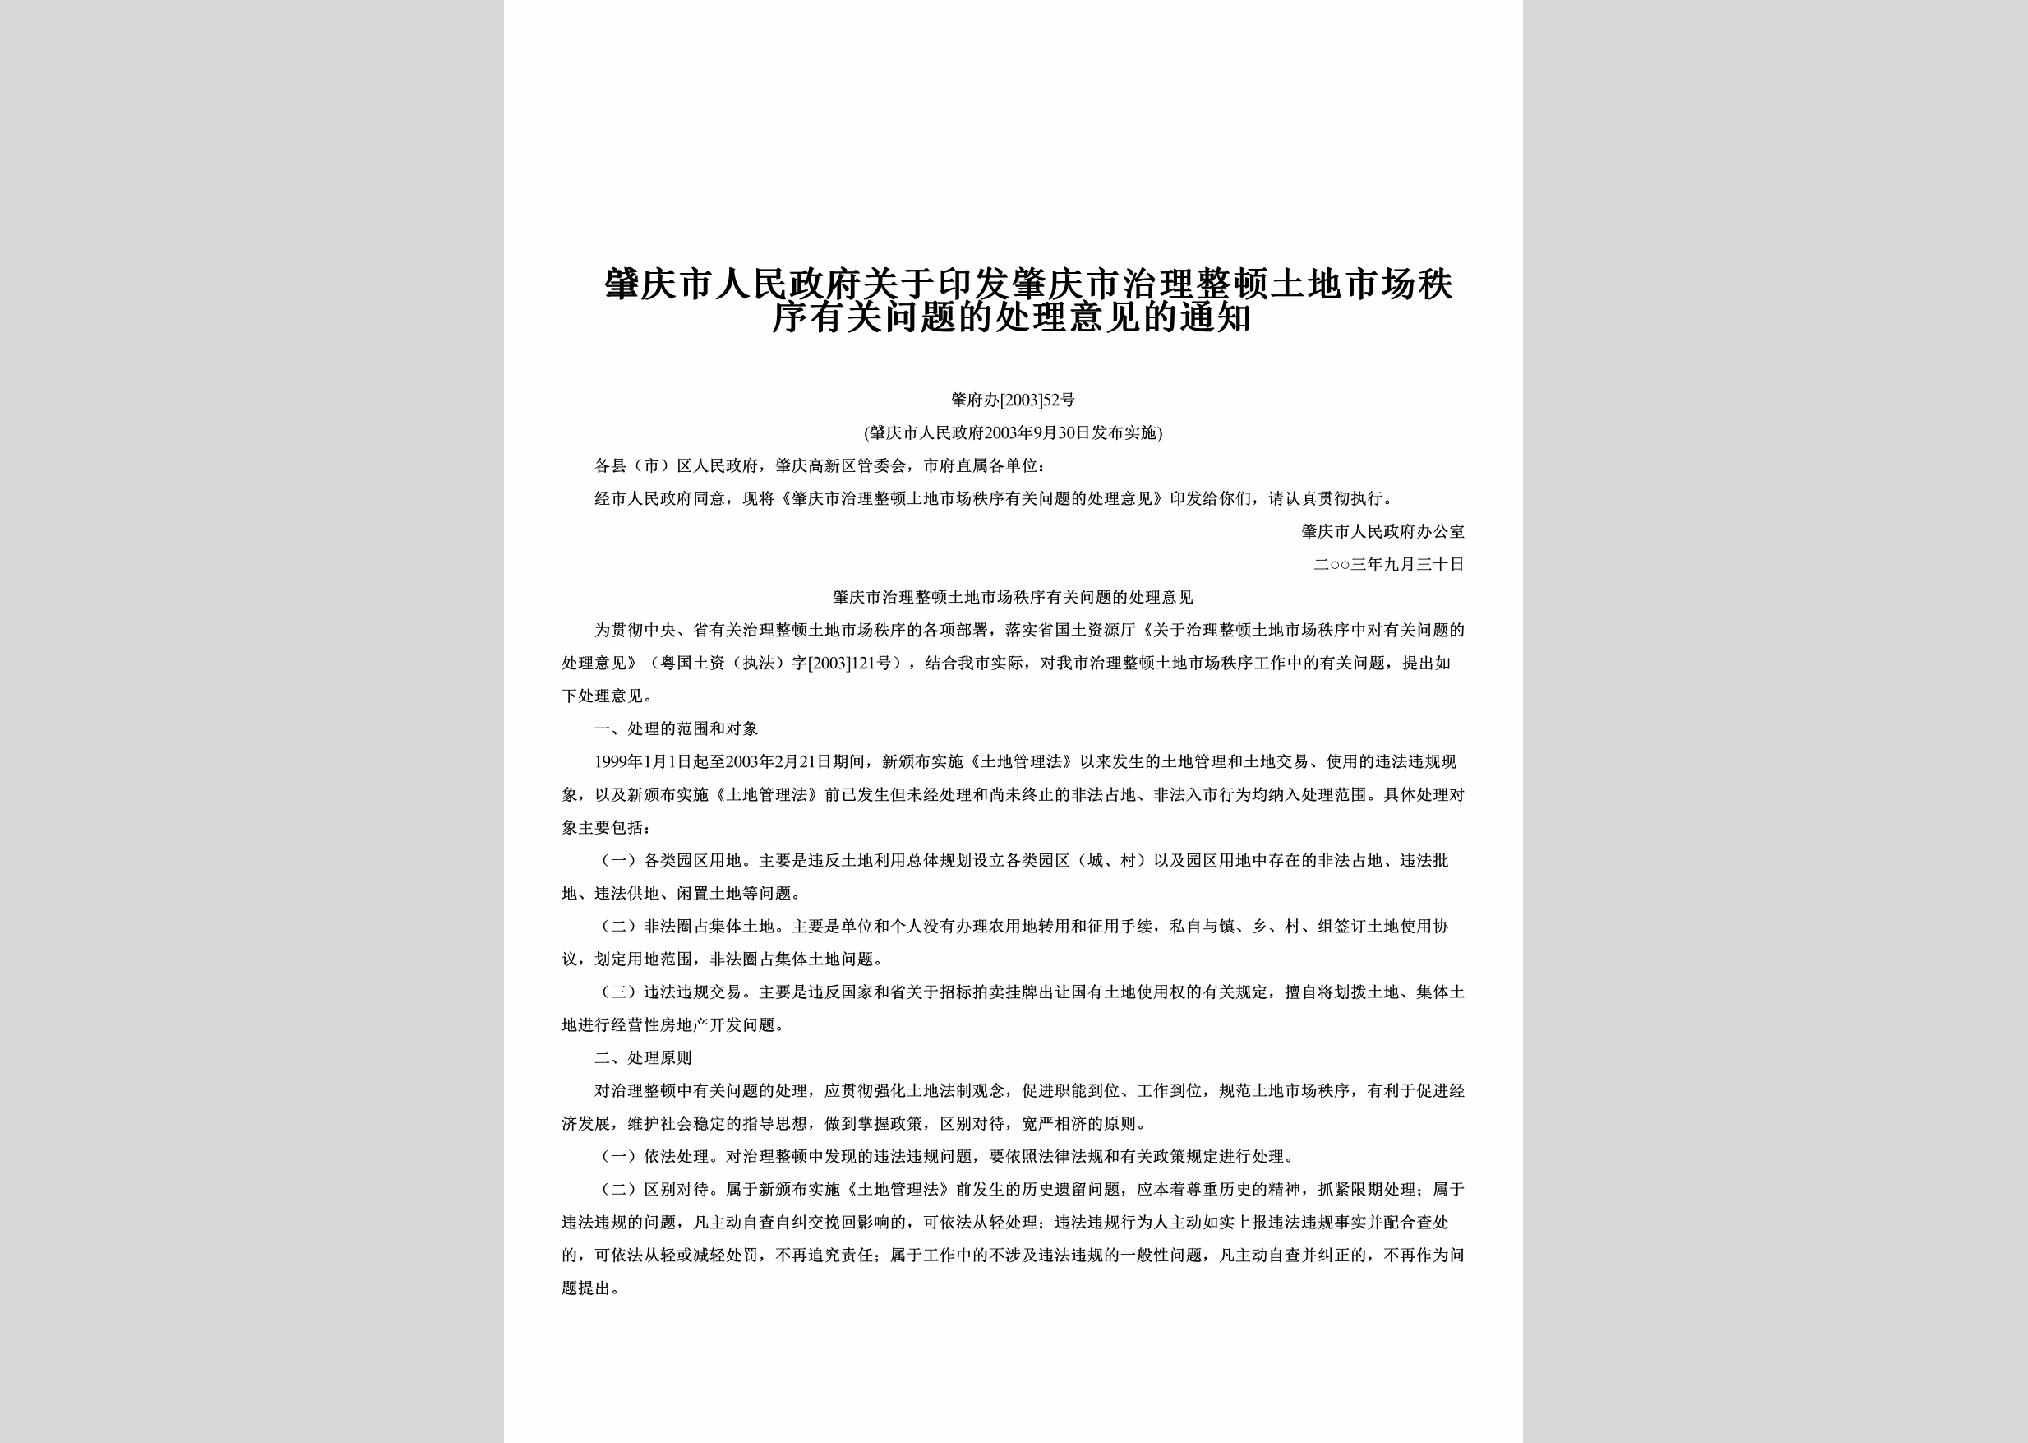 肇府办[2003]52号：关于印发肇庆市治理整顿土地市场秩序有关问题的处理意见的通知